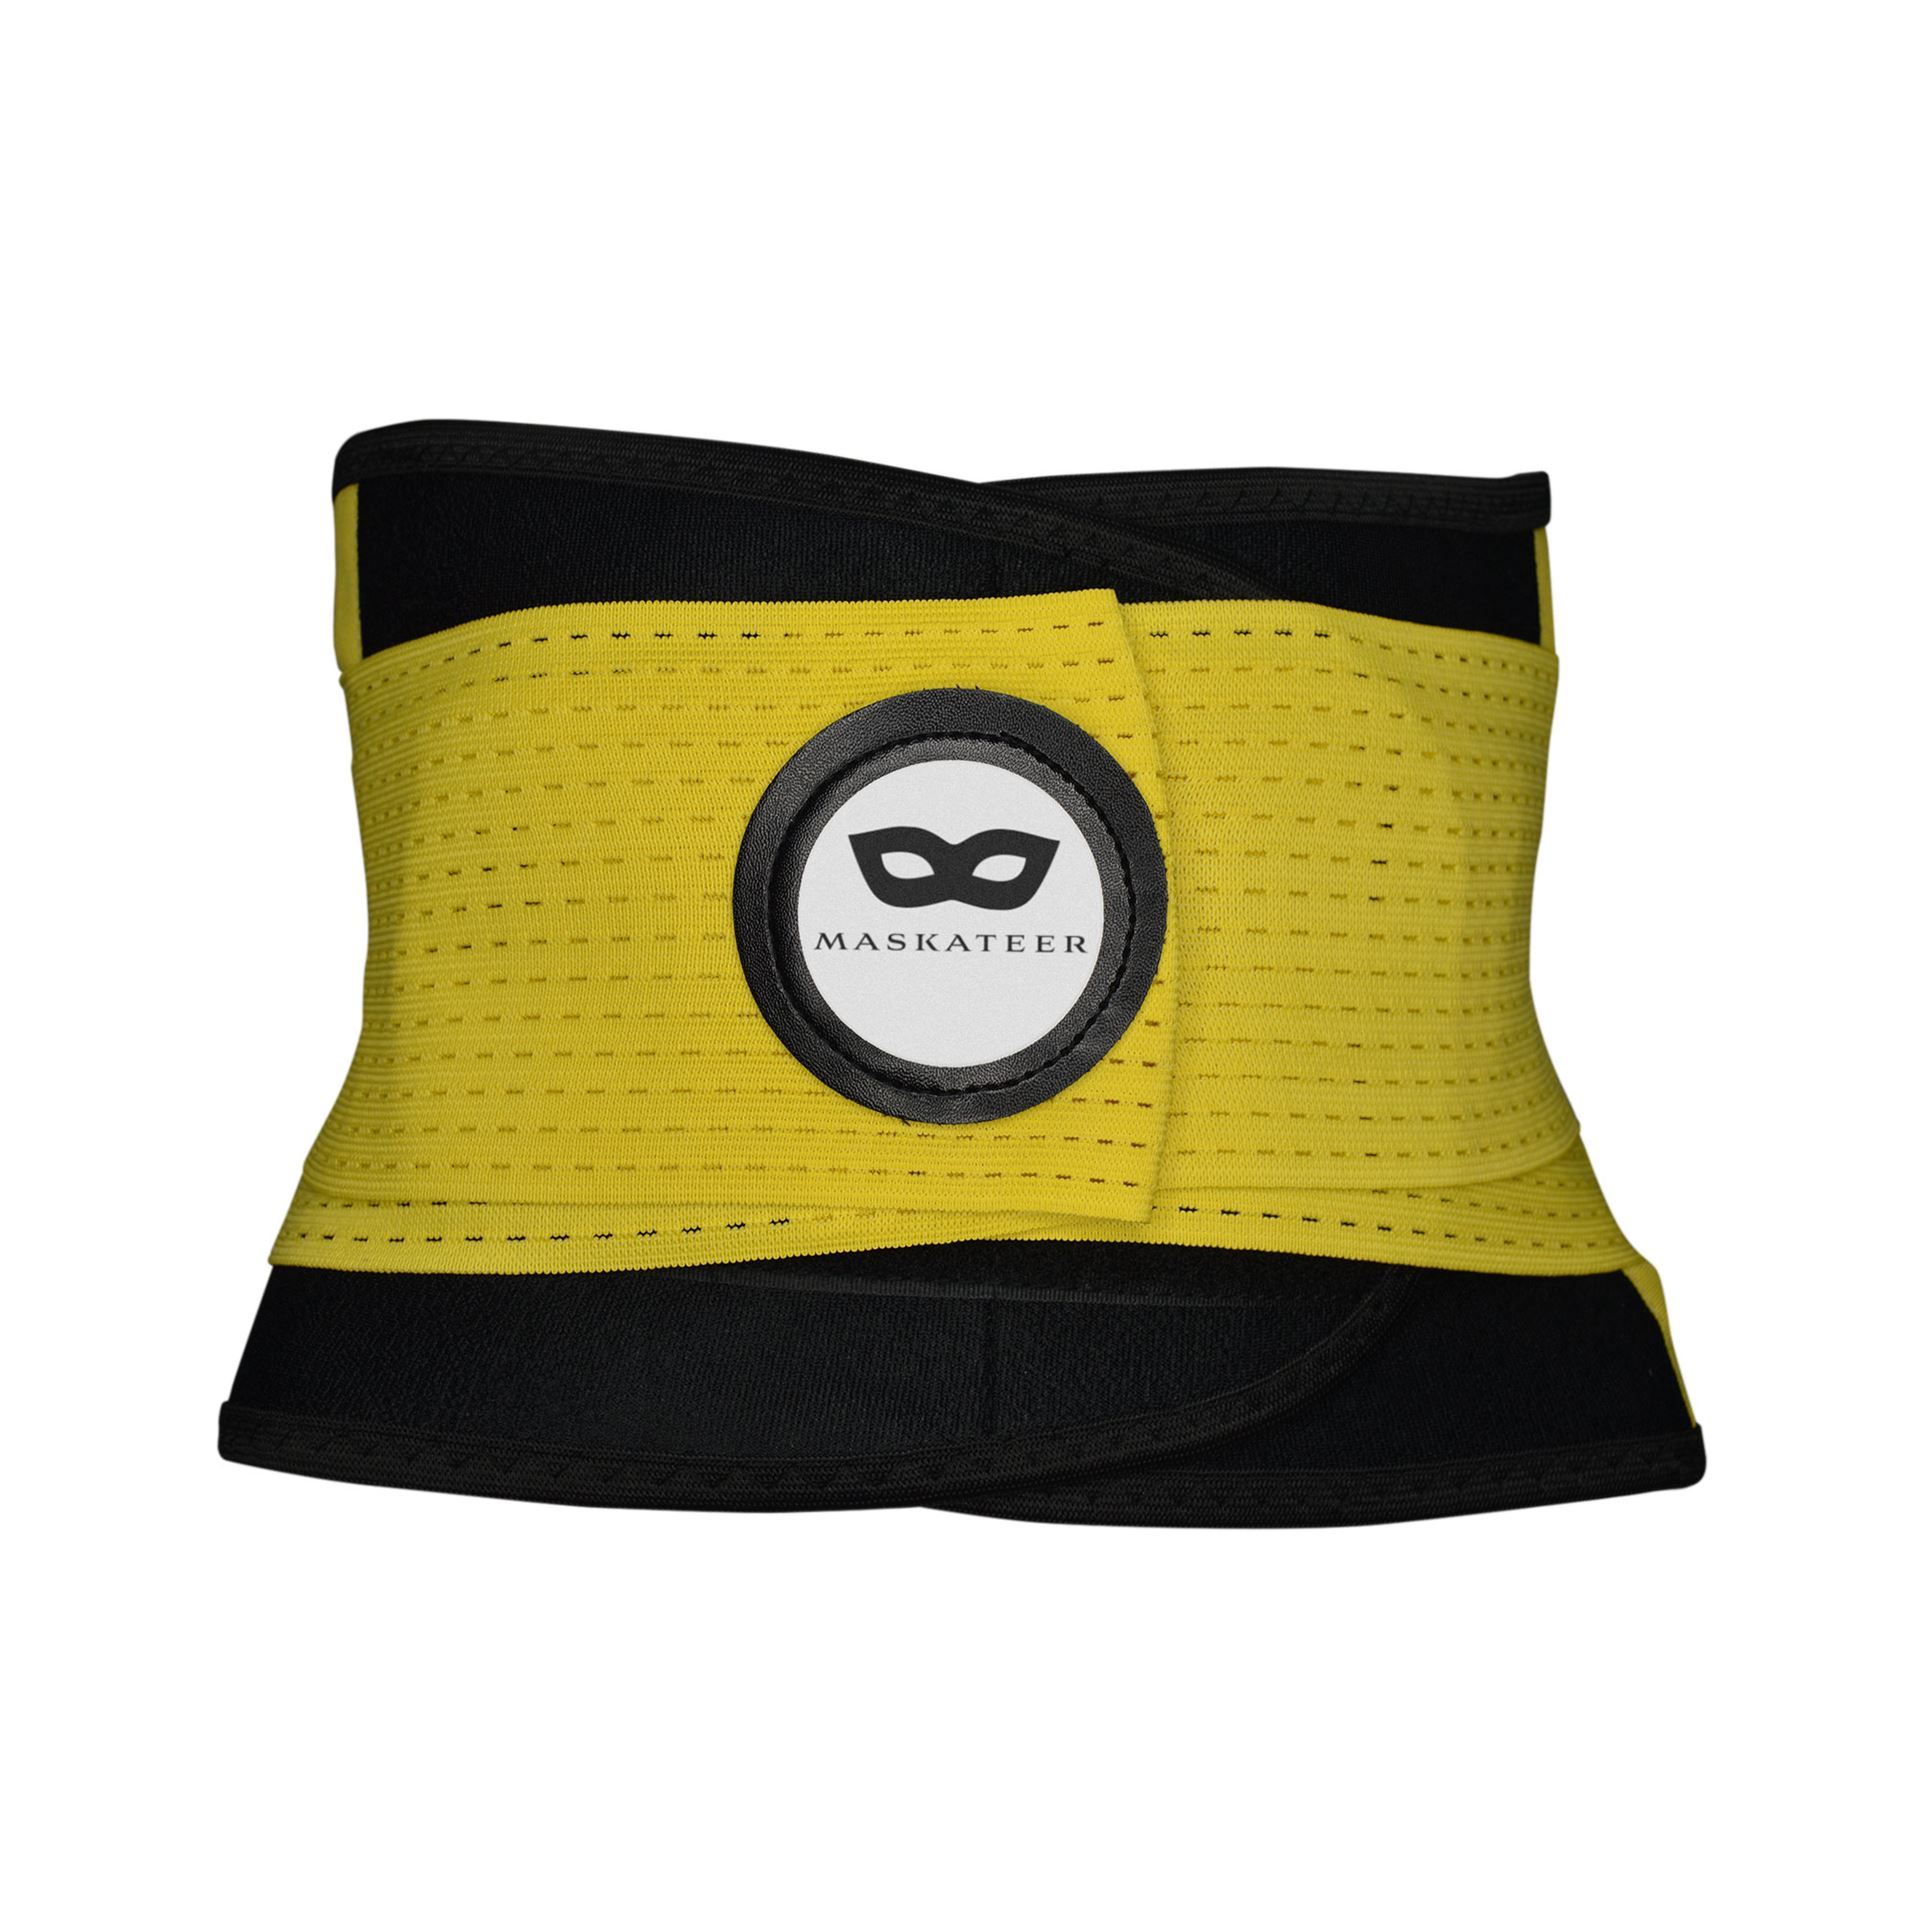 Maskateer Store. Comfortable Exercise Belt For Back Support